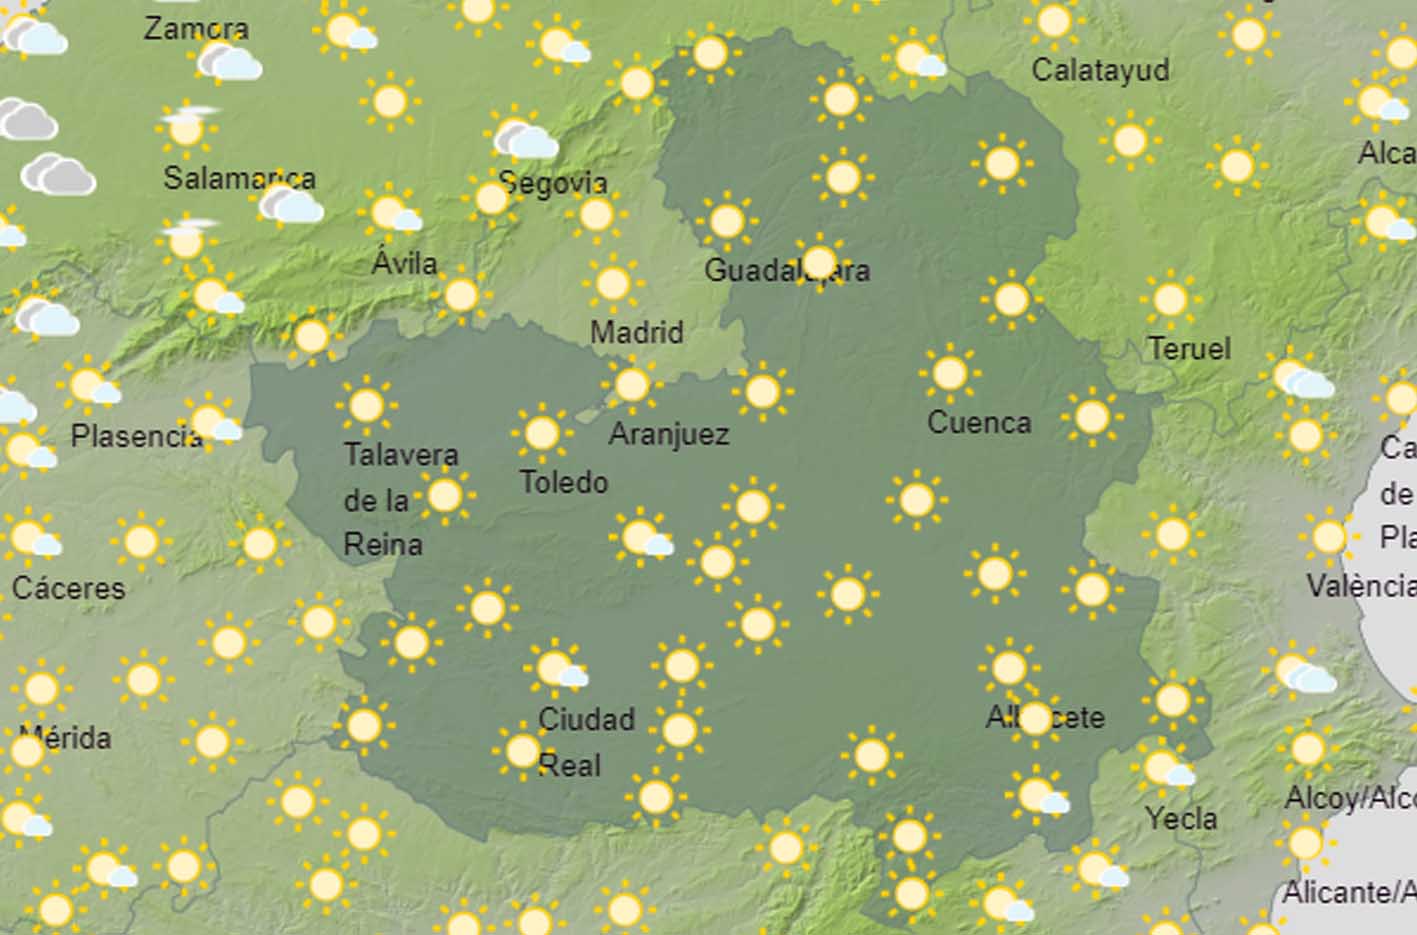 Mapa tiempo Castilla-Mancha subida temperaturas y sol